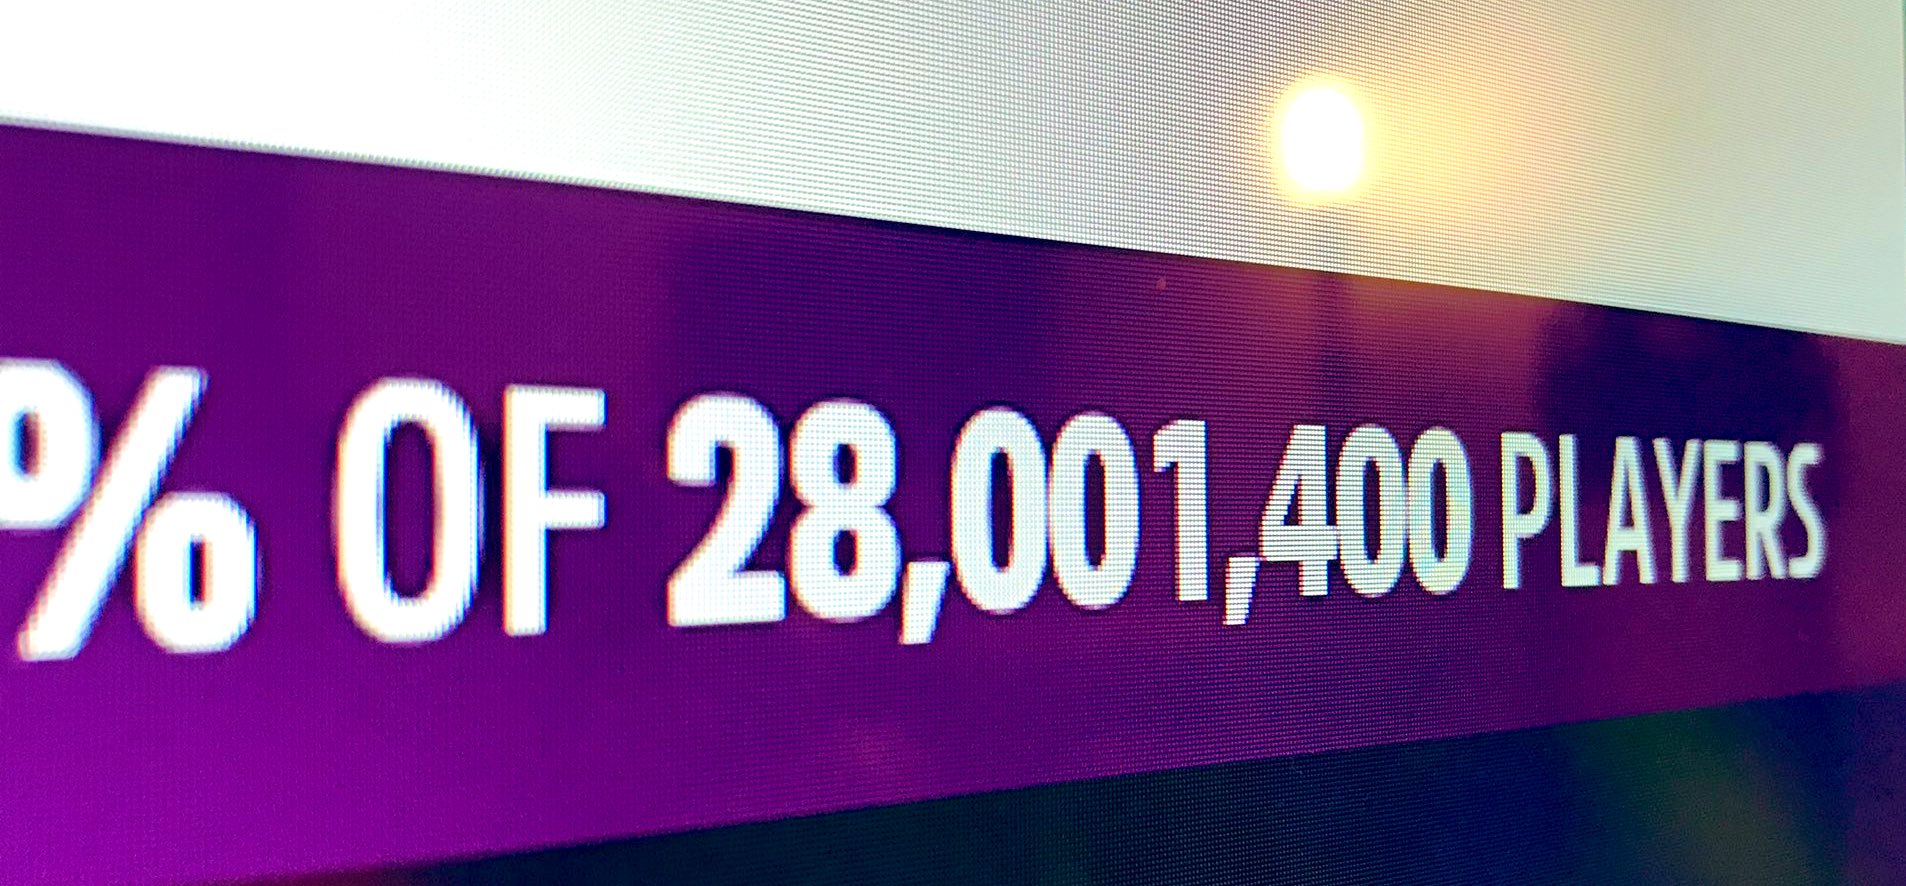 В Forza Horizon 5 уже более 28 миллионов игроков - игра превзошла результаты прошлой части: с сайта NEWXBOXONE.RU